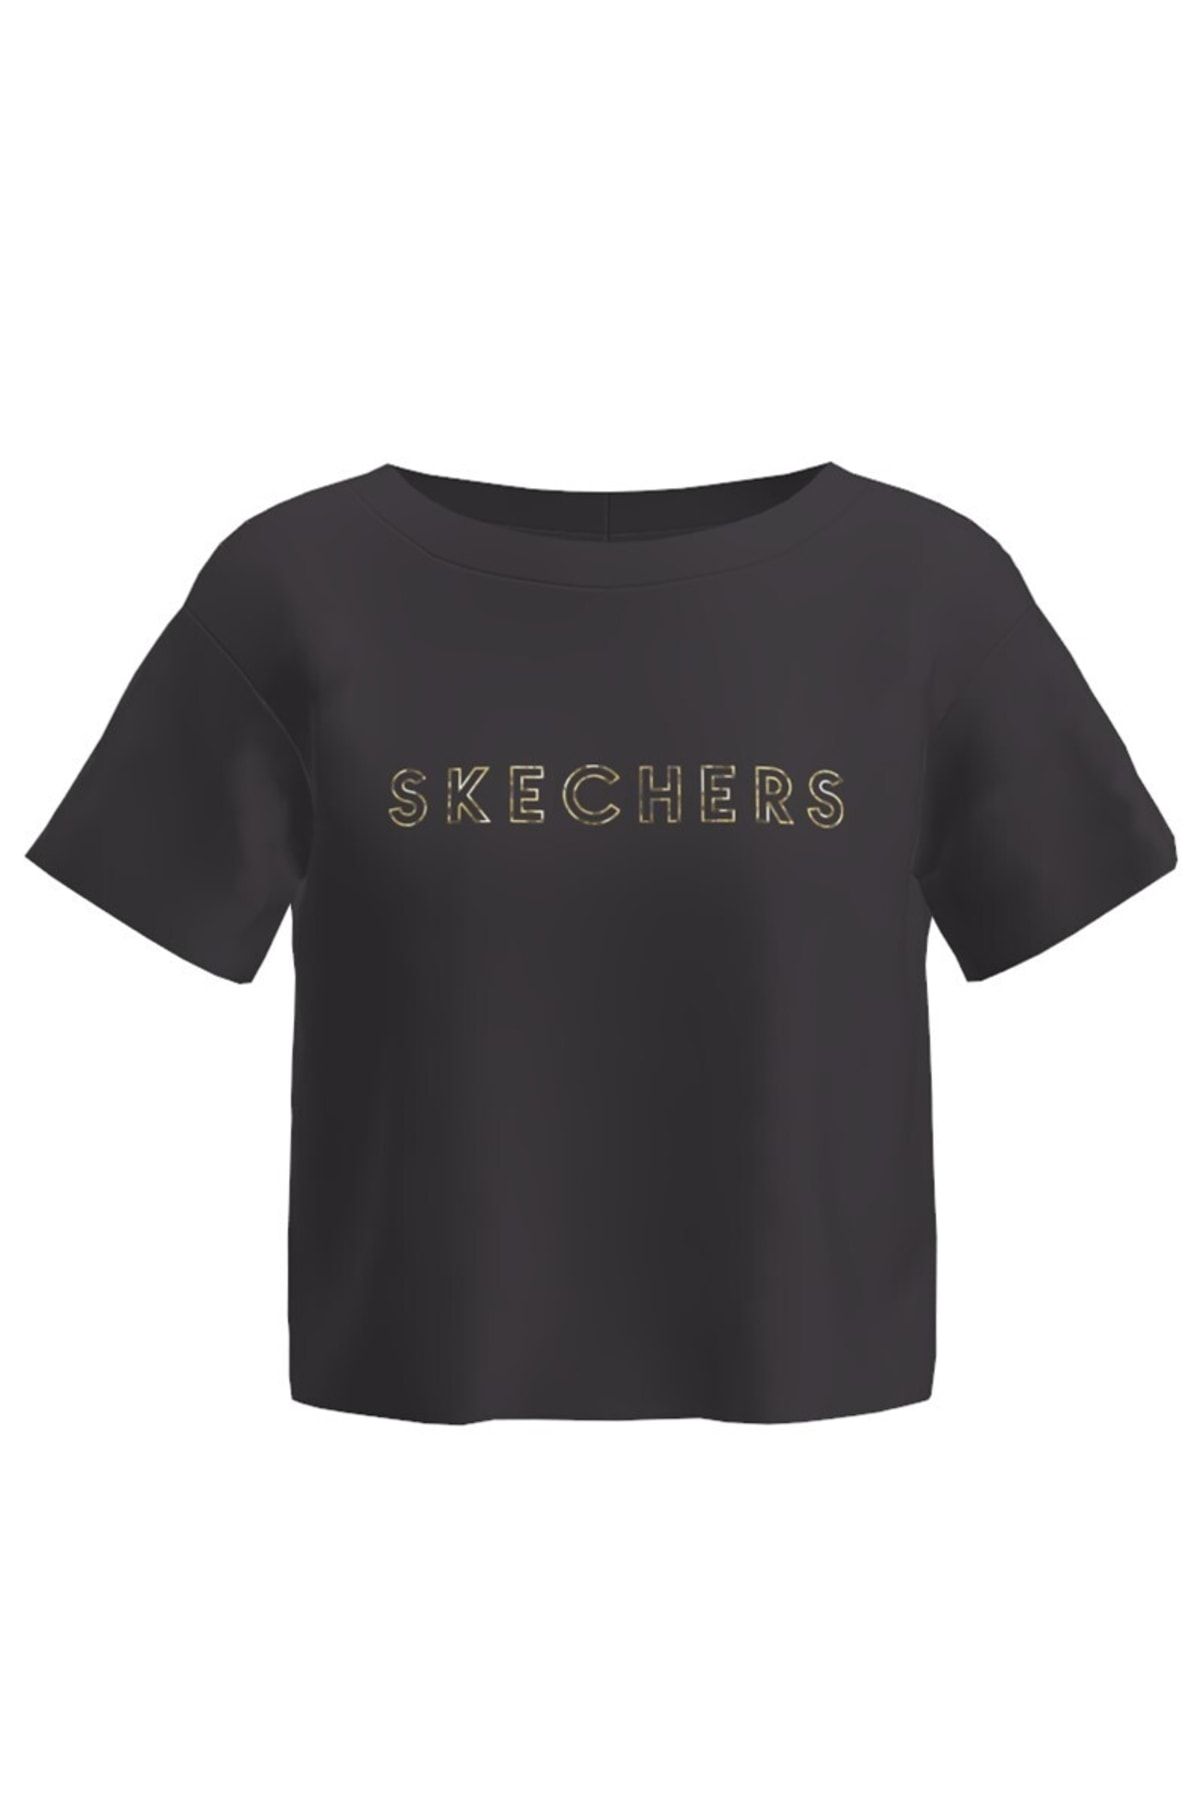 Skechers W Graphic Tee Crew Neck T-shirt T-shirt